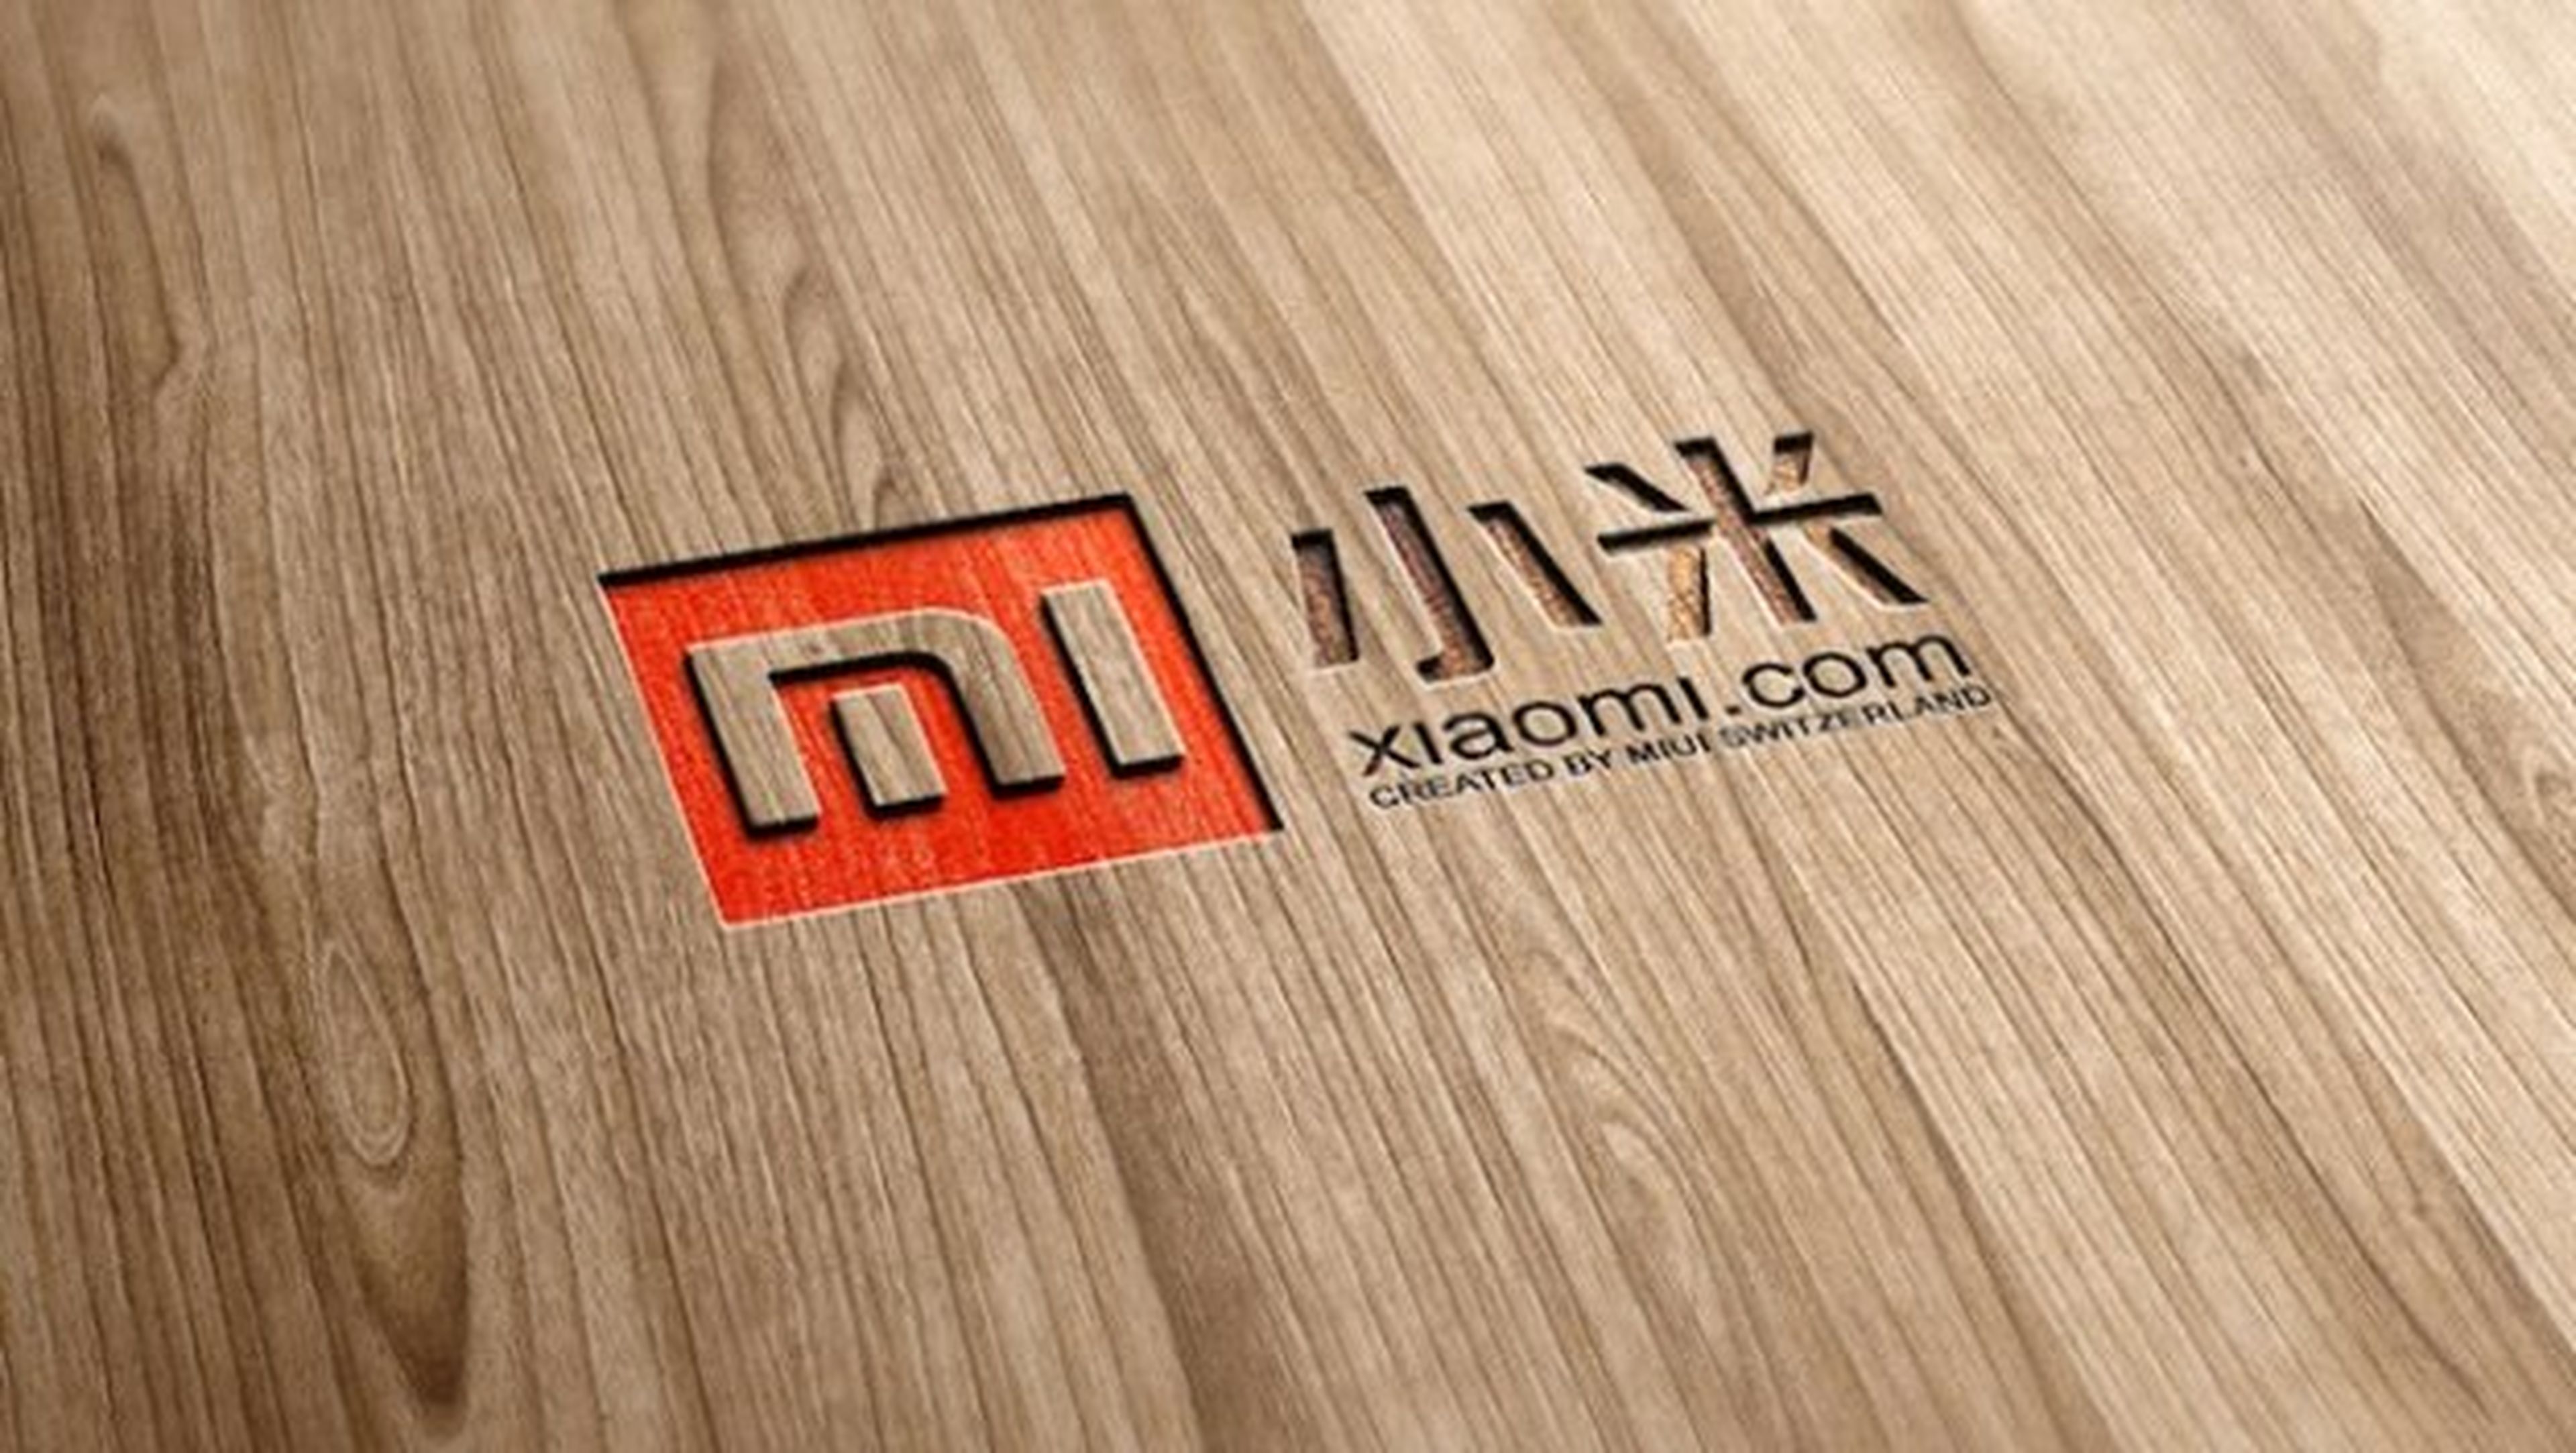 Xiaomi imparable: vende casi 3 veces más en 2014 que en 2013